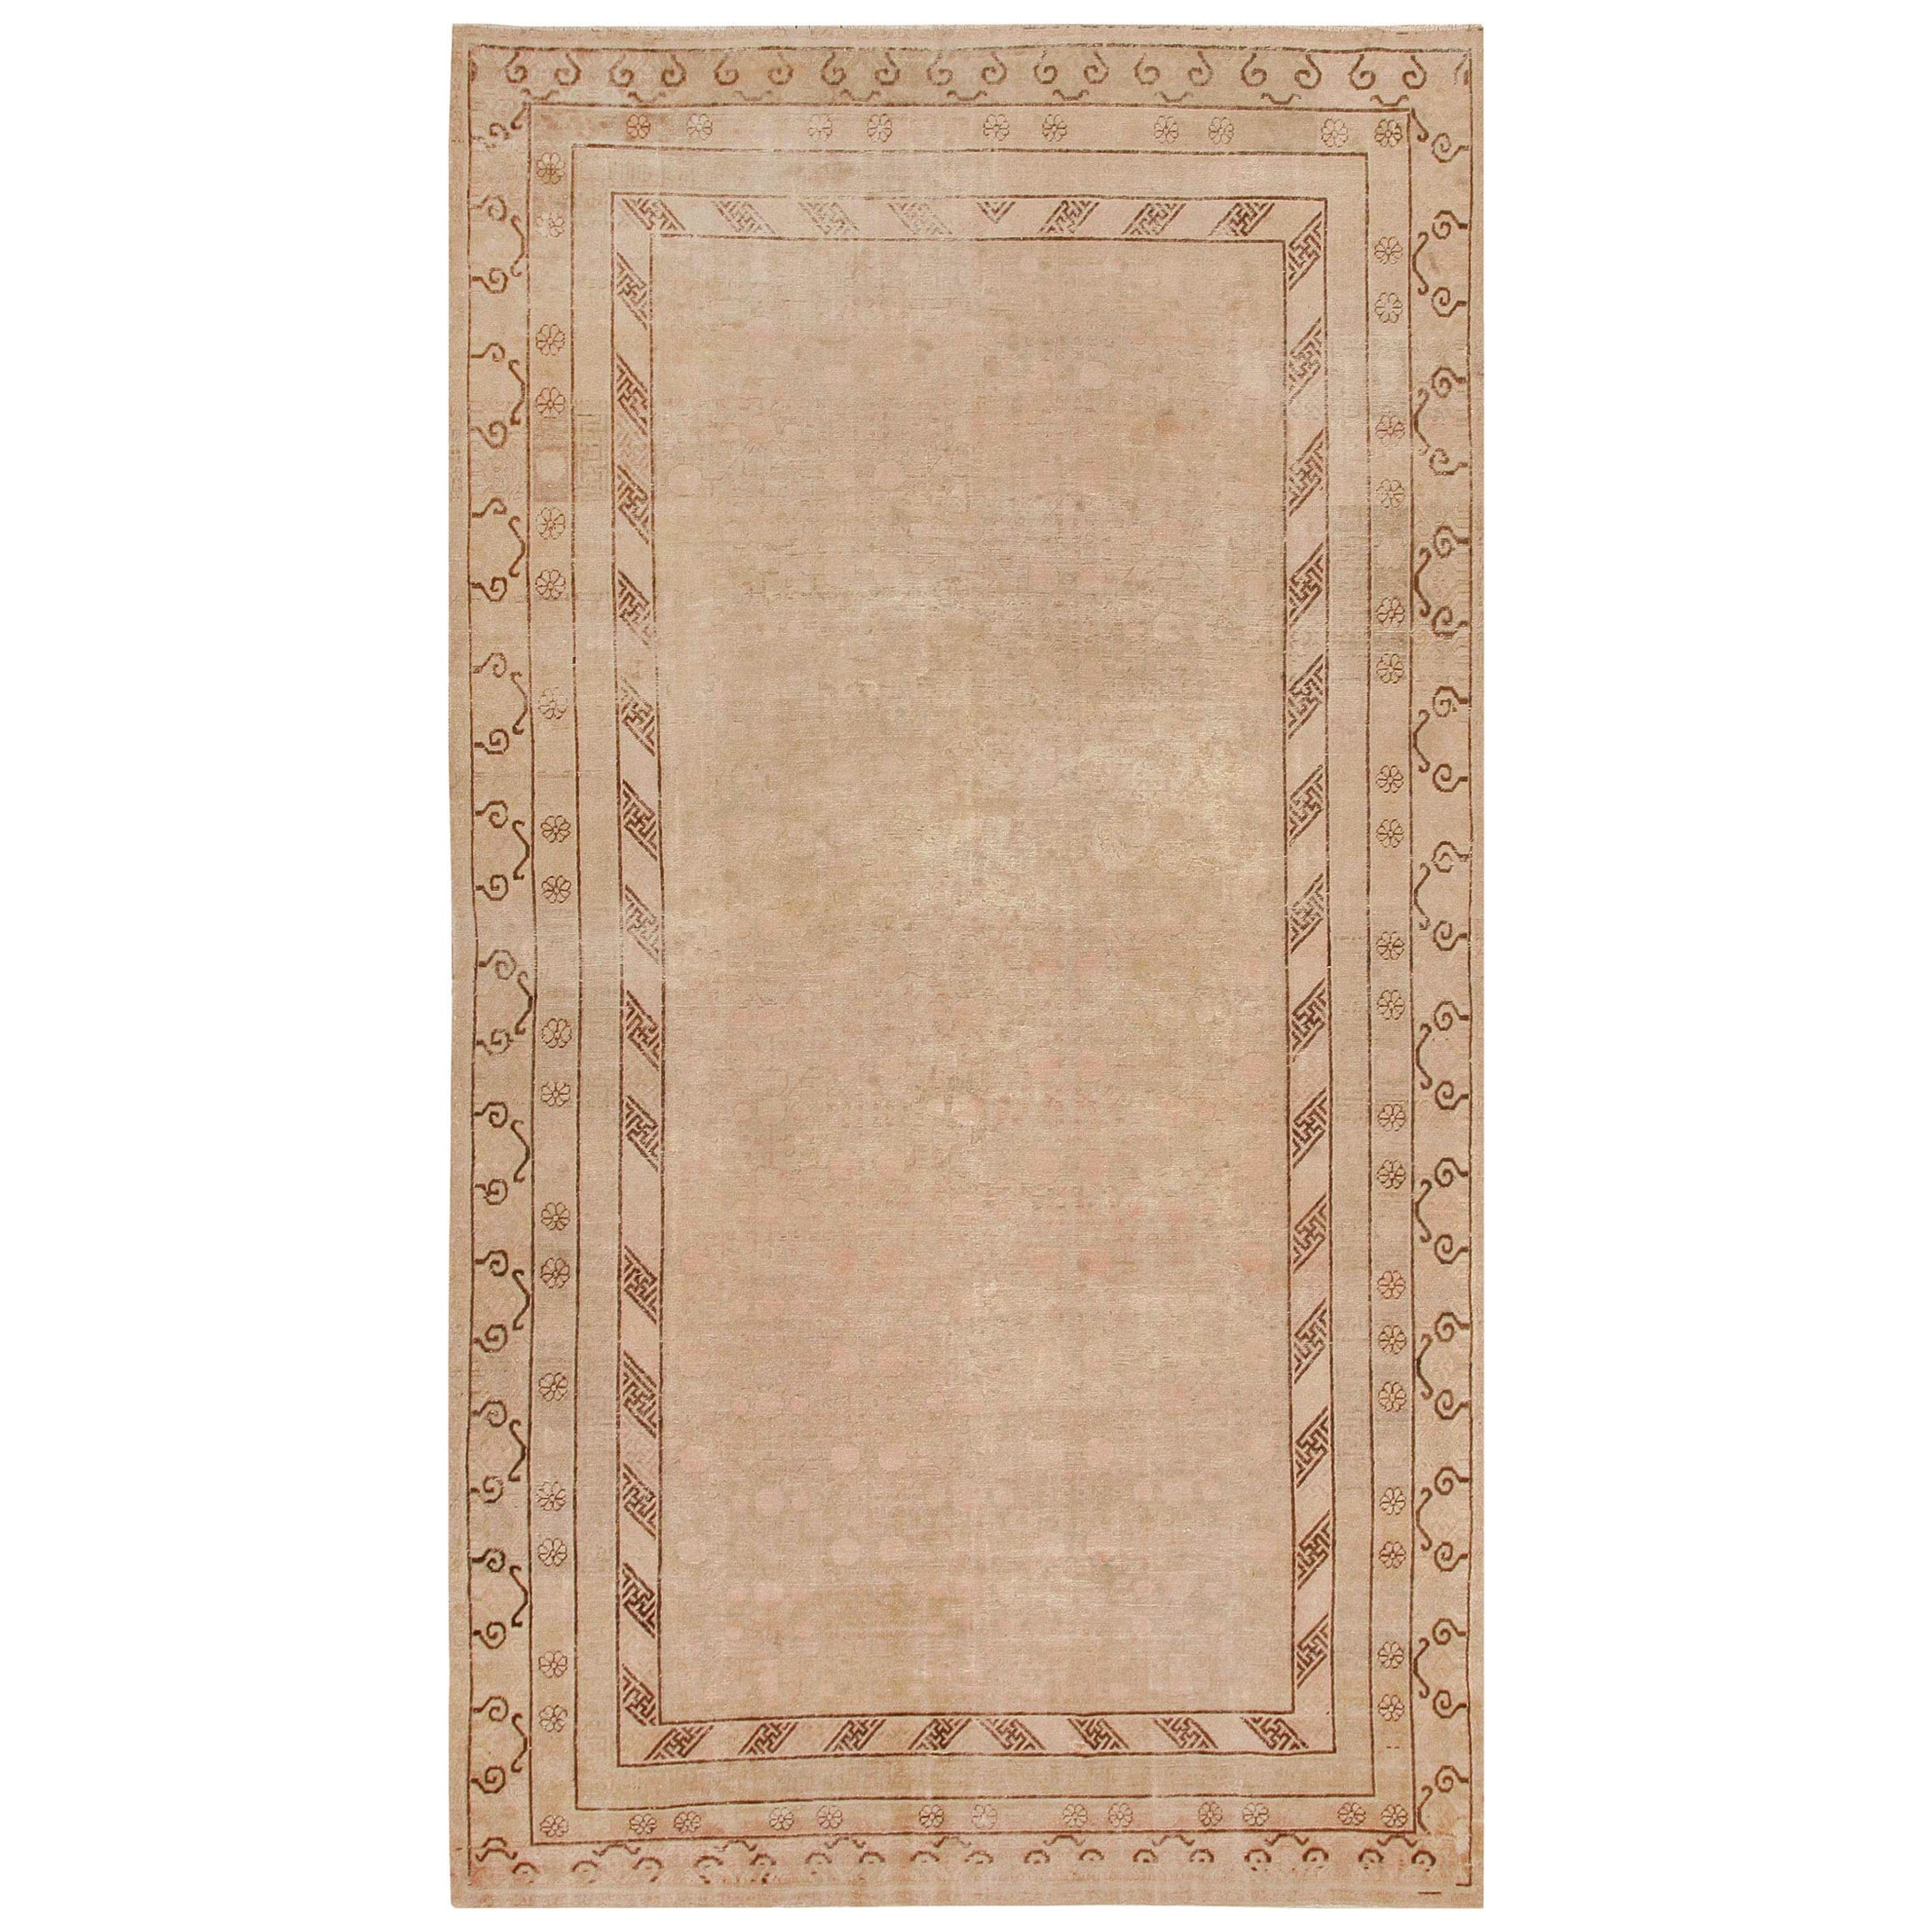 Decorative Antique Khotan Carpet. Size: 8 ft x 16 ft For Sale